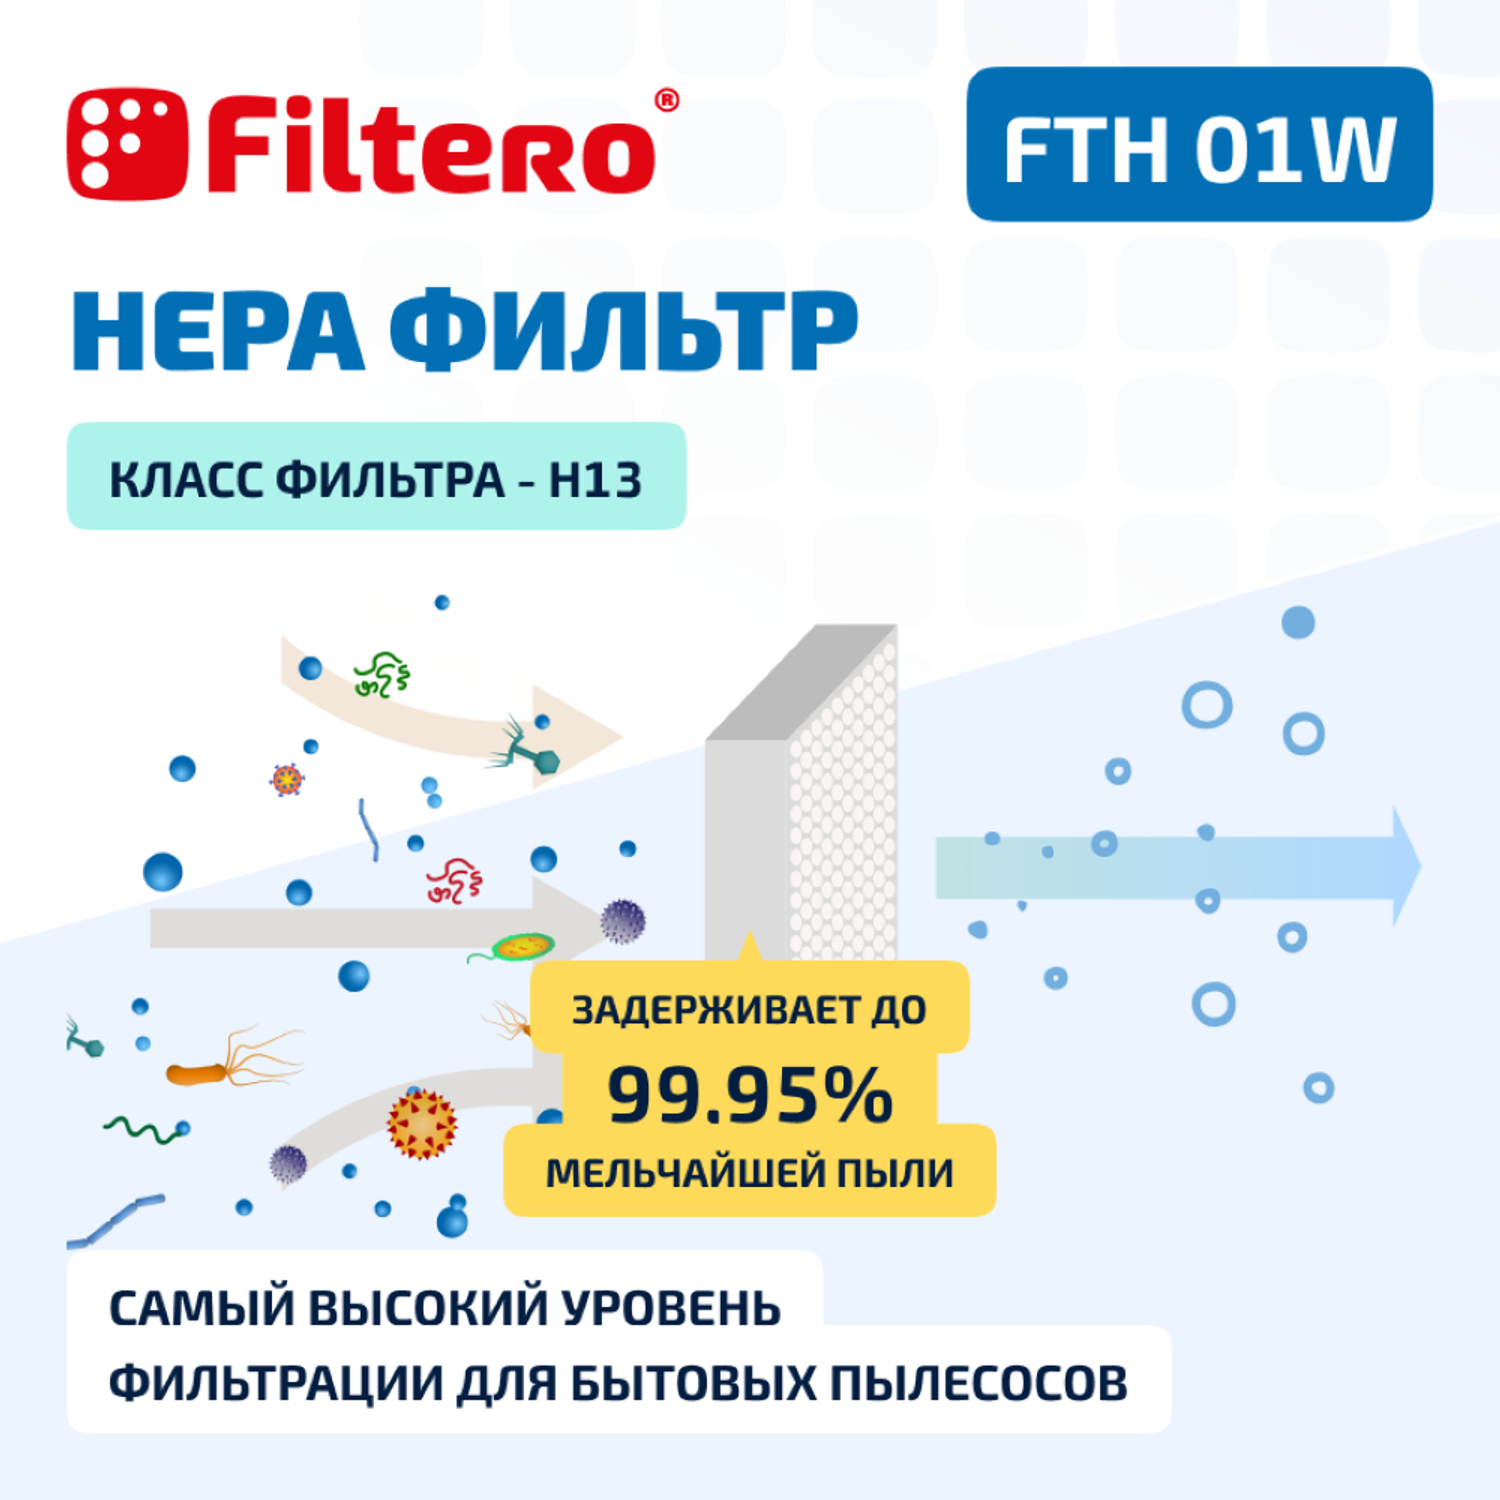 Фильтр HEPA Filtero для пылесосов Electrolux и Philips FTH 01 W Elx моющийся - фото 4